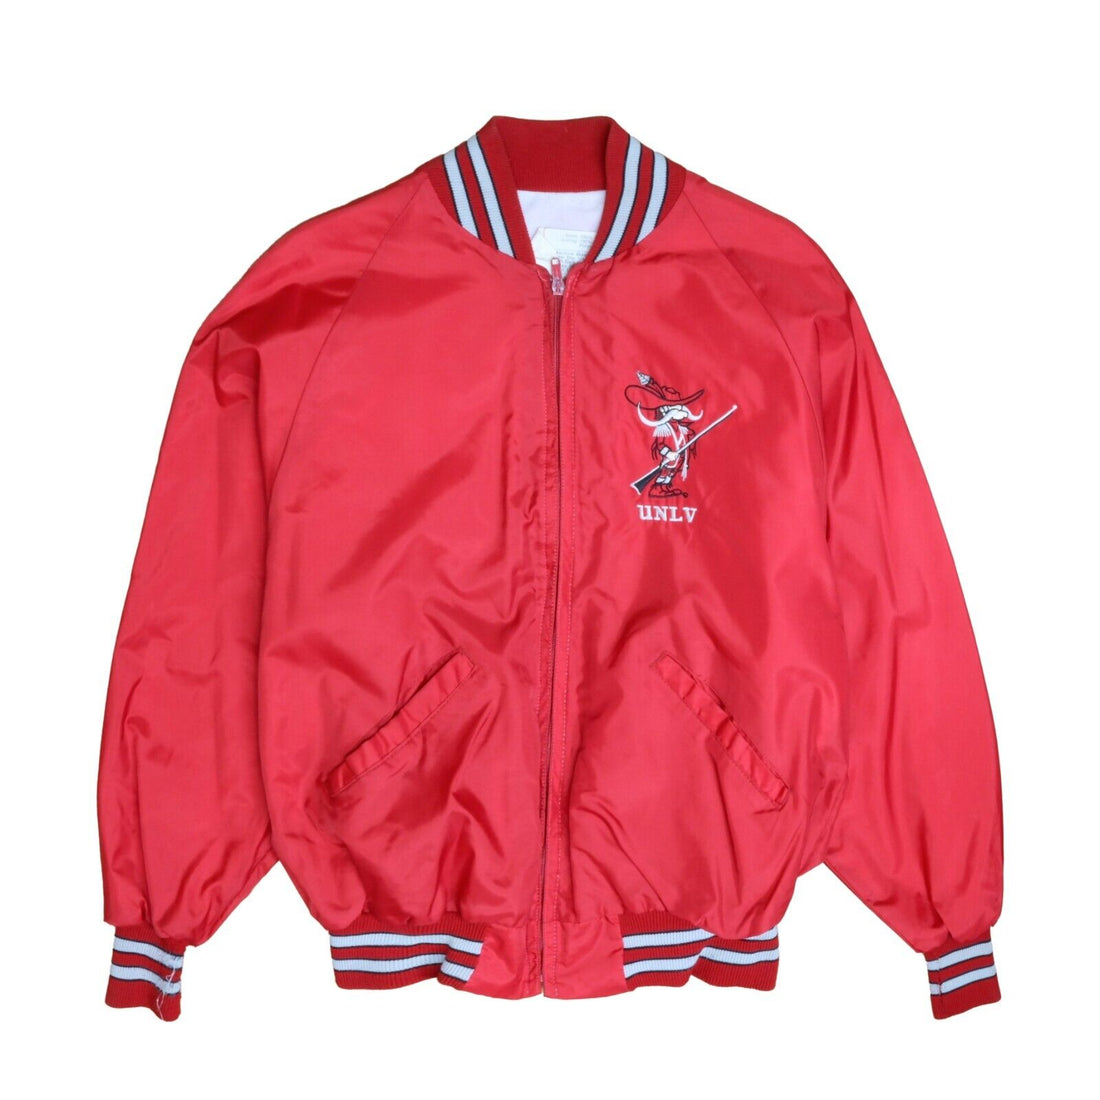 Vintage UNLV Runnin Rebels Bomber Jacket Size Large Red NCAA